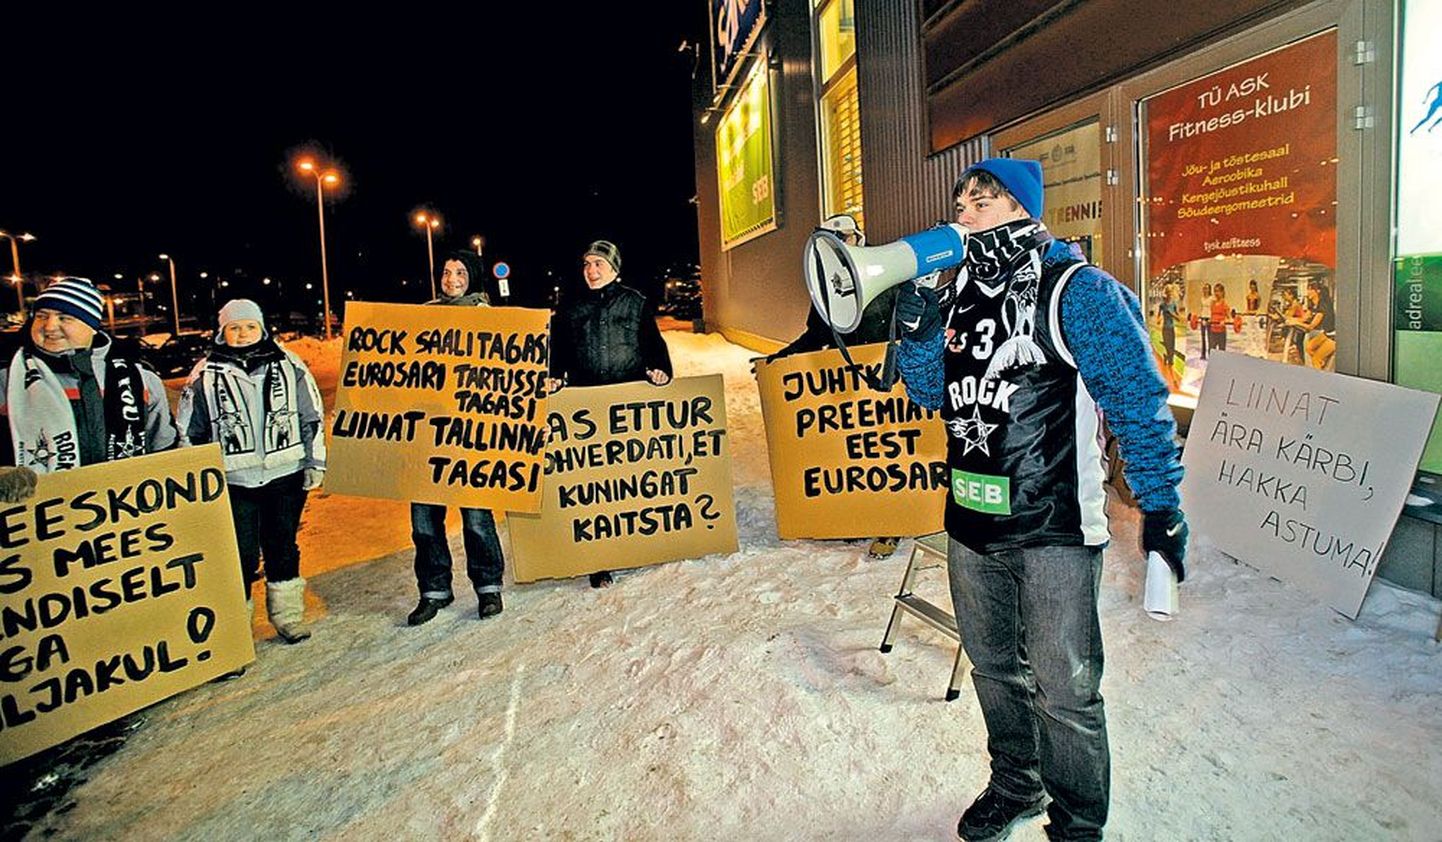 Jaanuari lõpus korraldasid Tartu korvpallifännid protestiaktsiooni, et väljendada pahameelt klubi senise tegevuse üle. Fännid polnud rahul klubi juhatuse senise tegevusega ja nõudsid, et keegi peaks kesiste tulemuste eest rohkem vastutama.